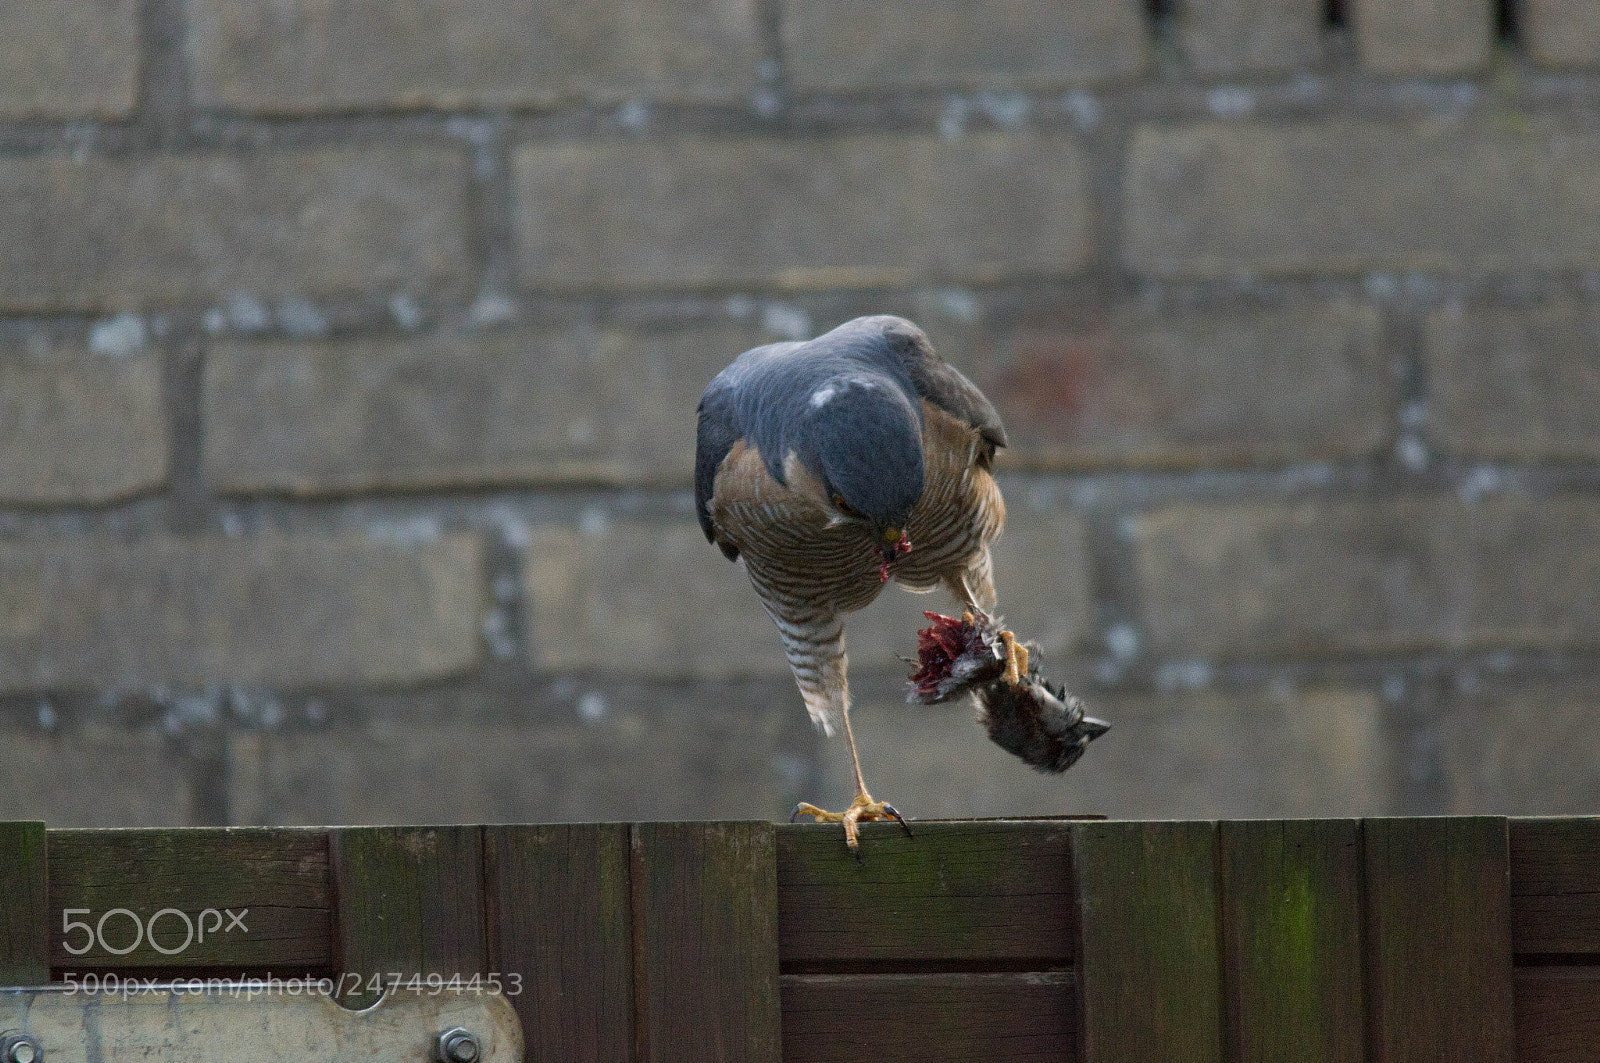 Sony SLT-A55 (SLT-A55V) sample photo. Sparrow hawk with prey photography